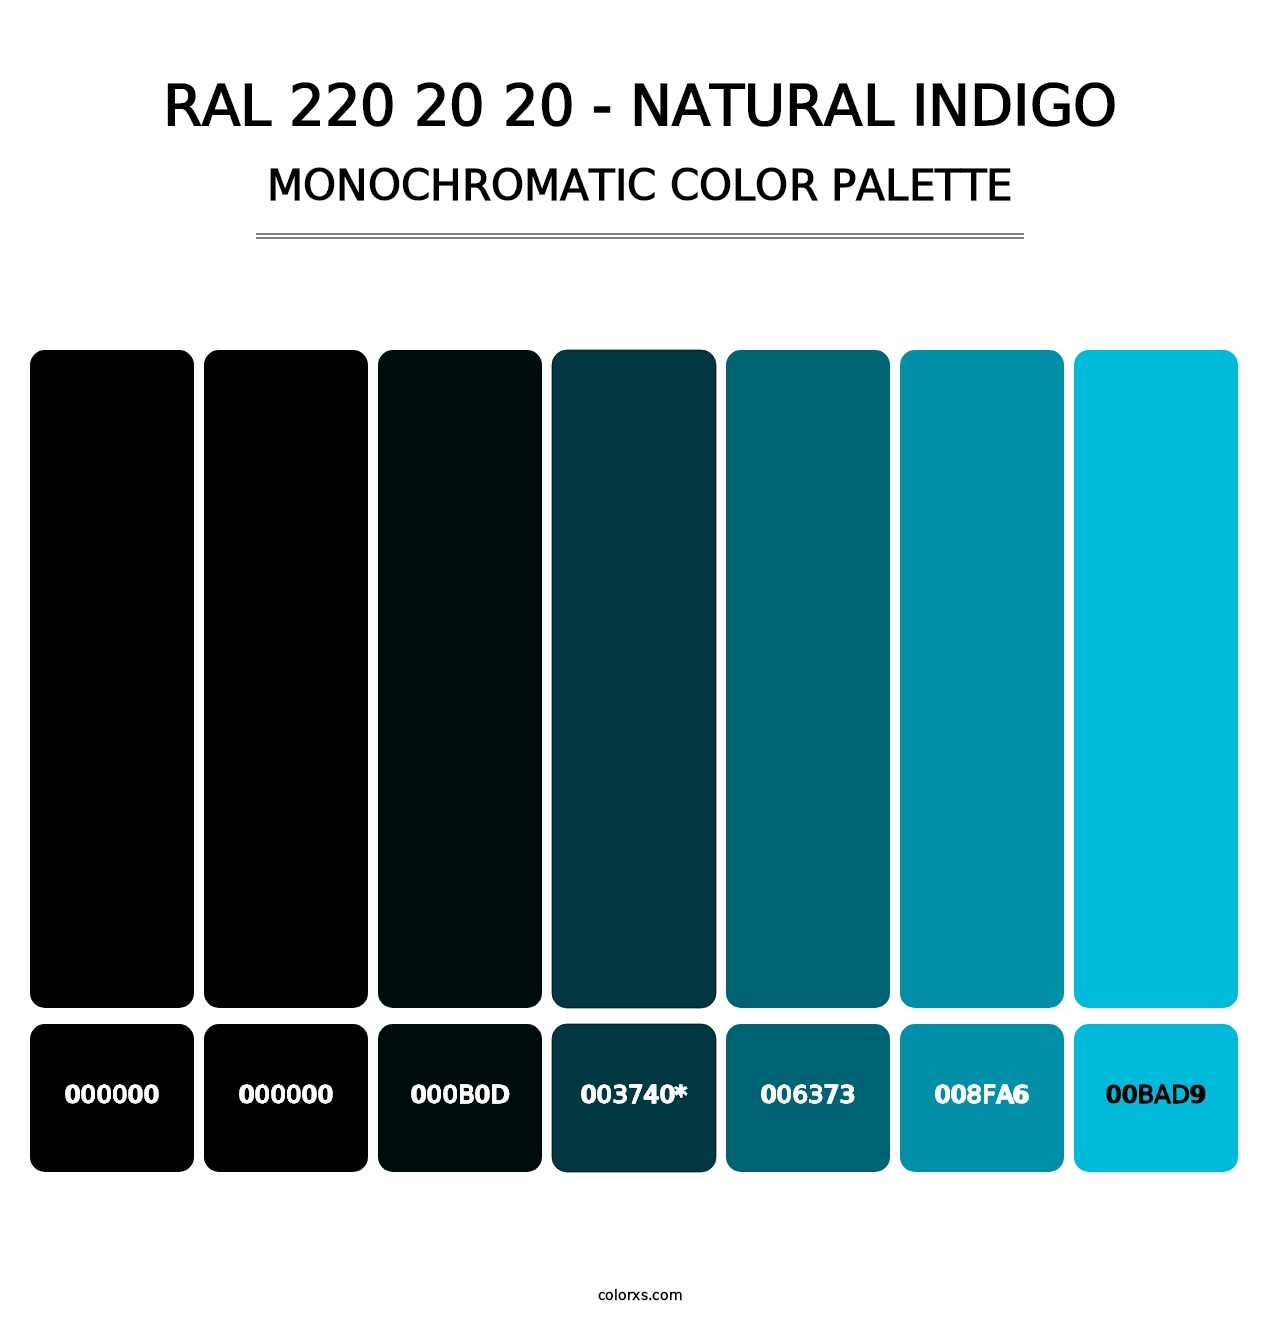 RAL 220 20 20 - Natural Indigo - Monochromatic Color Palette